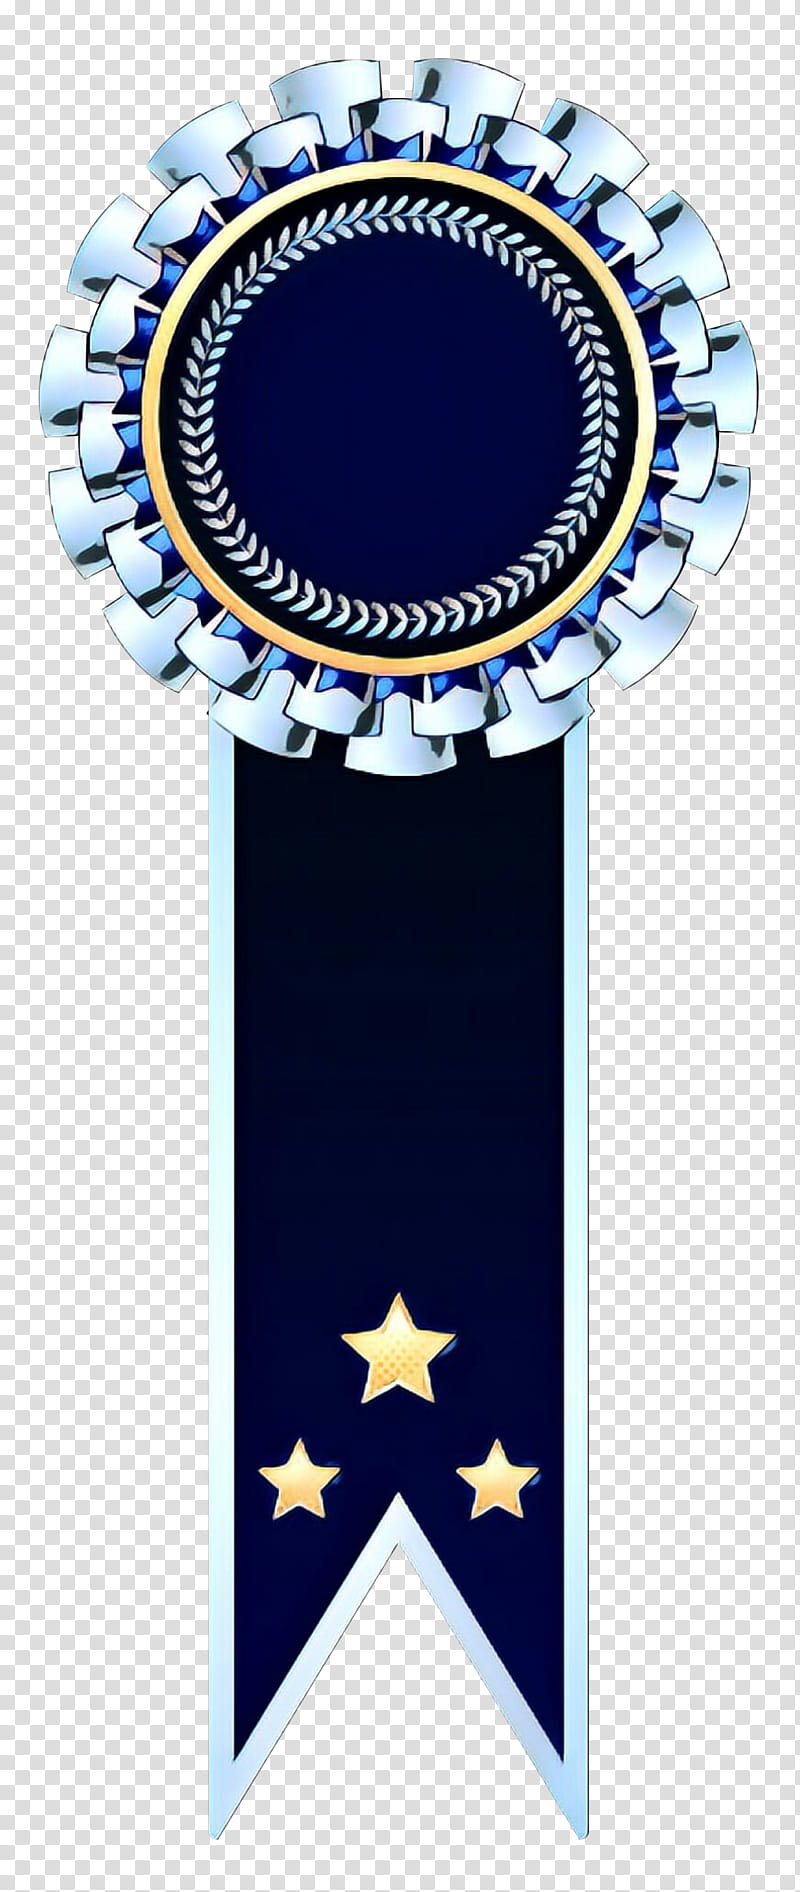 Blue Background Ribbon, Rosette, Medal, Silver Medal, Scrapbooking, Cobalt Blue, Electric Blue, Badge transparent background PNG clipart